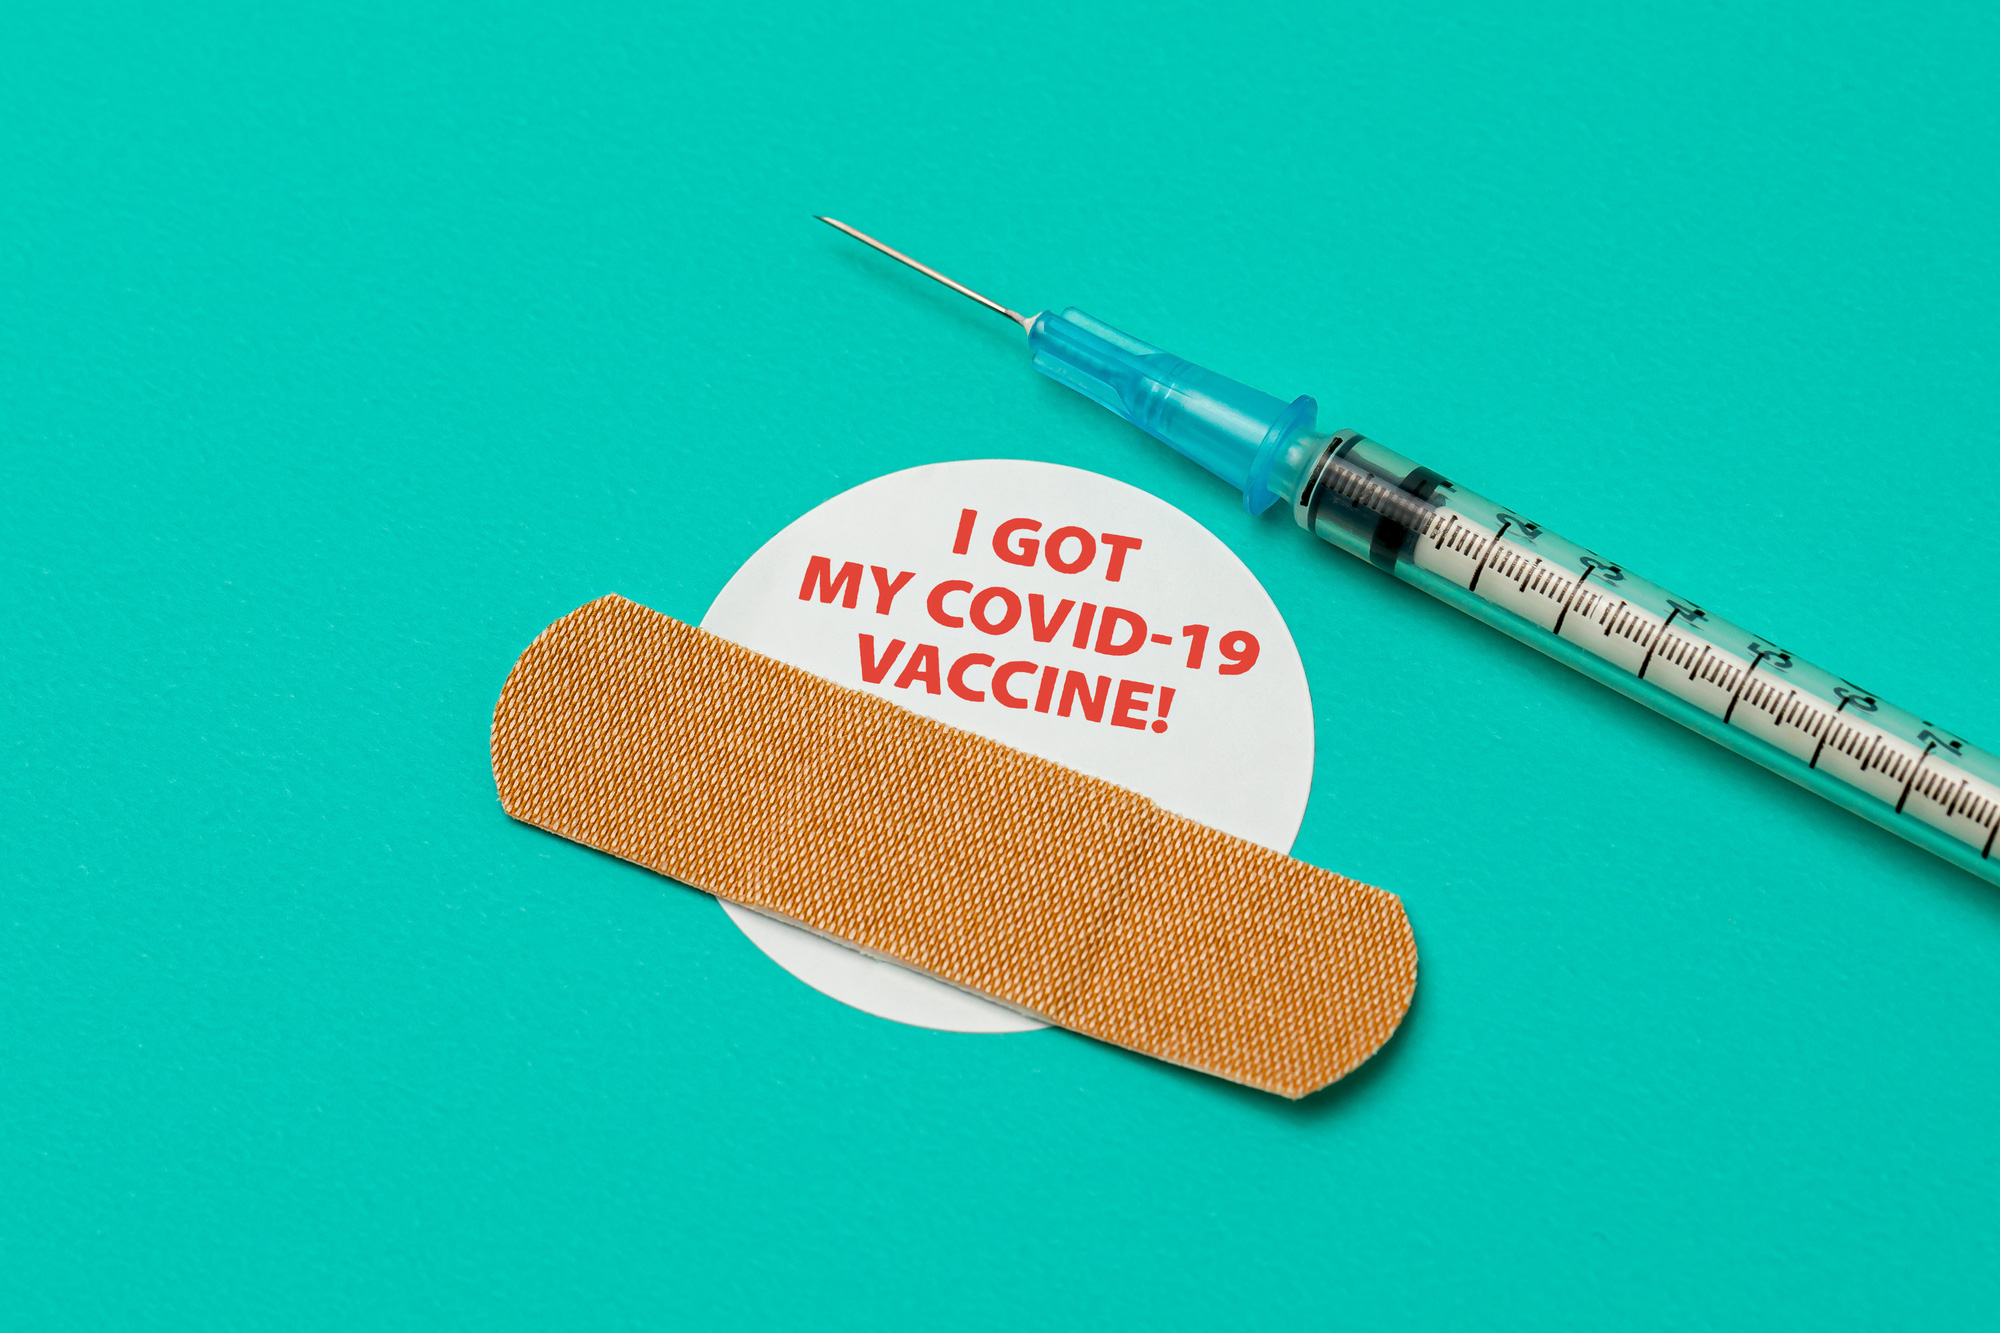 CDC Mỹ bác bỏ tin đồn: Vaccine COVID-19 chứa thành phần gây nguy hiểm - Ảnh 1.